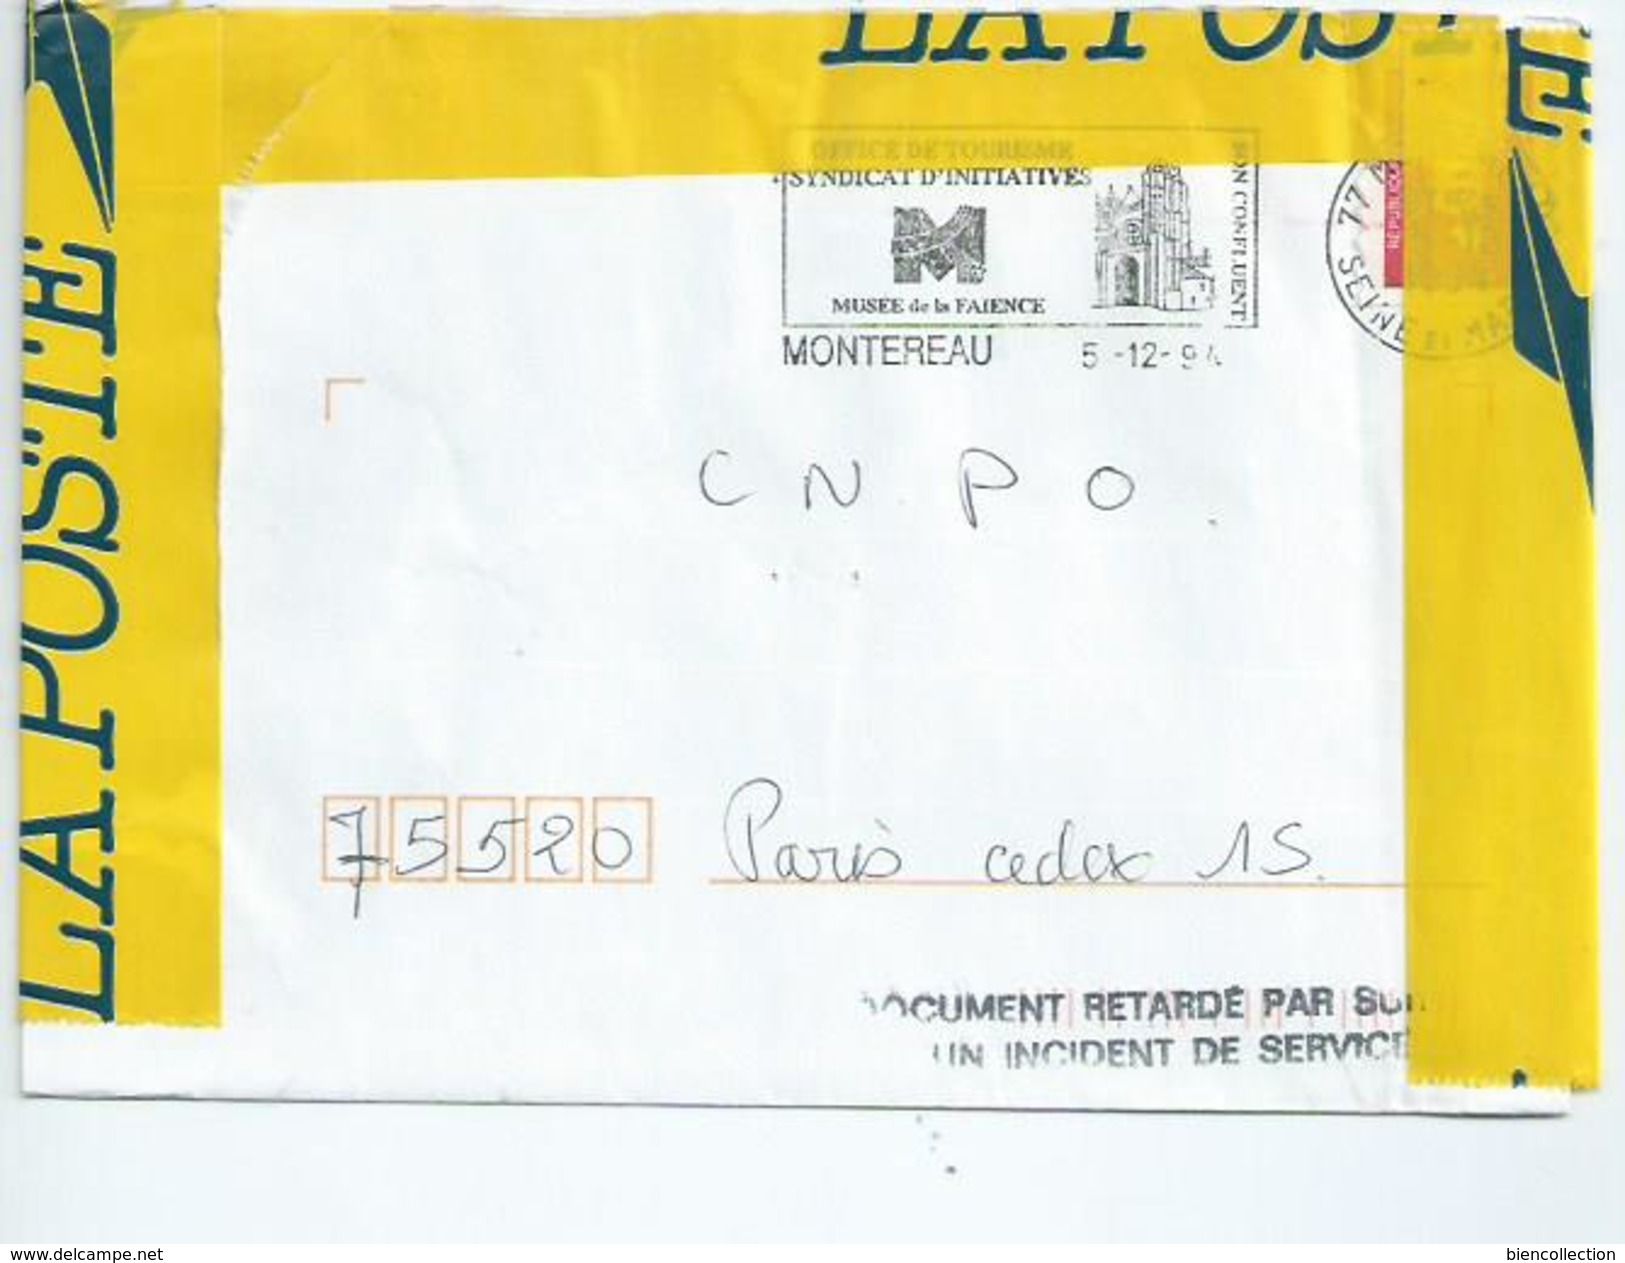 Courrier Accidenté Dans Les Services Postaux.Paris 15 - Lettere Accidentate